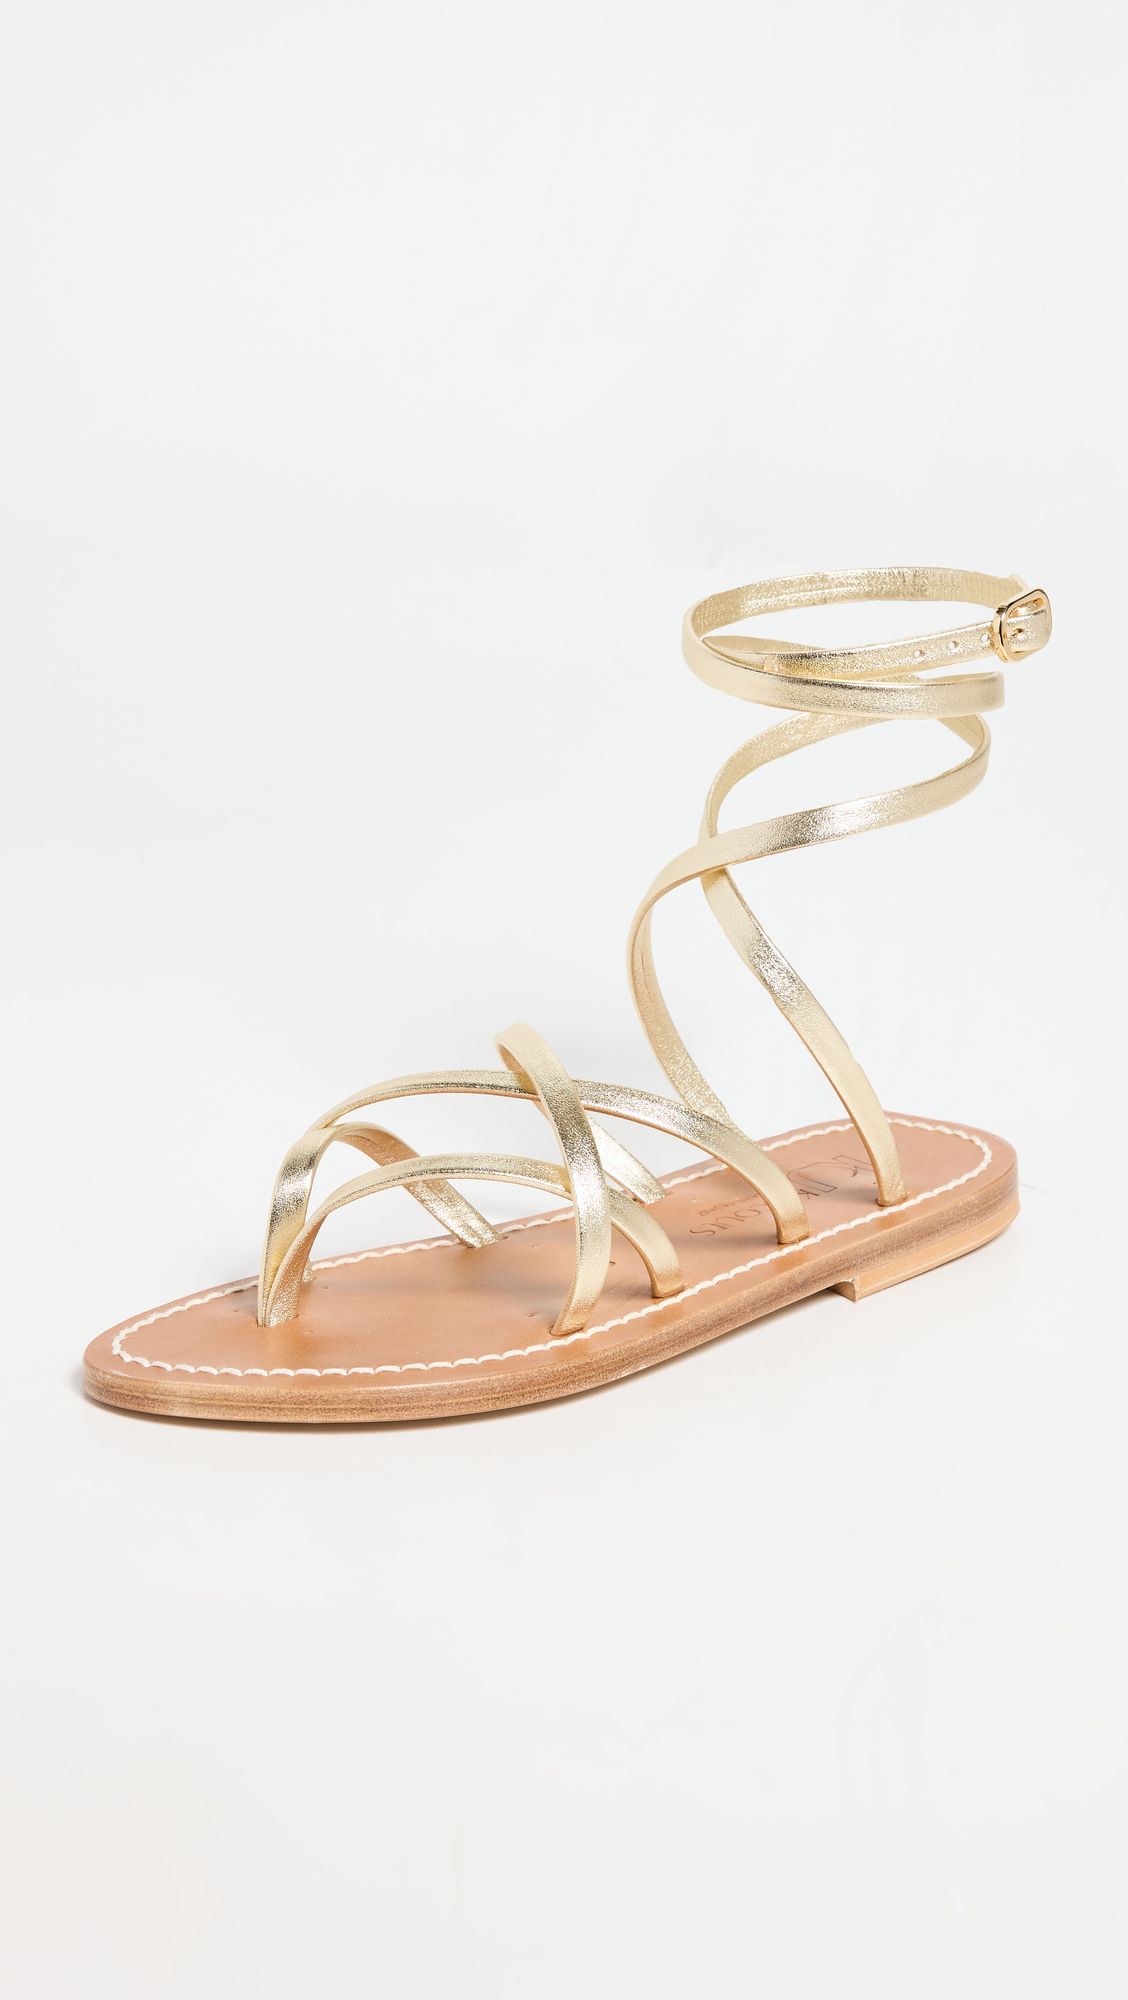 Lace up Sandals | Shopbop